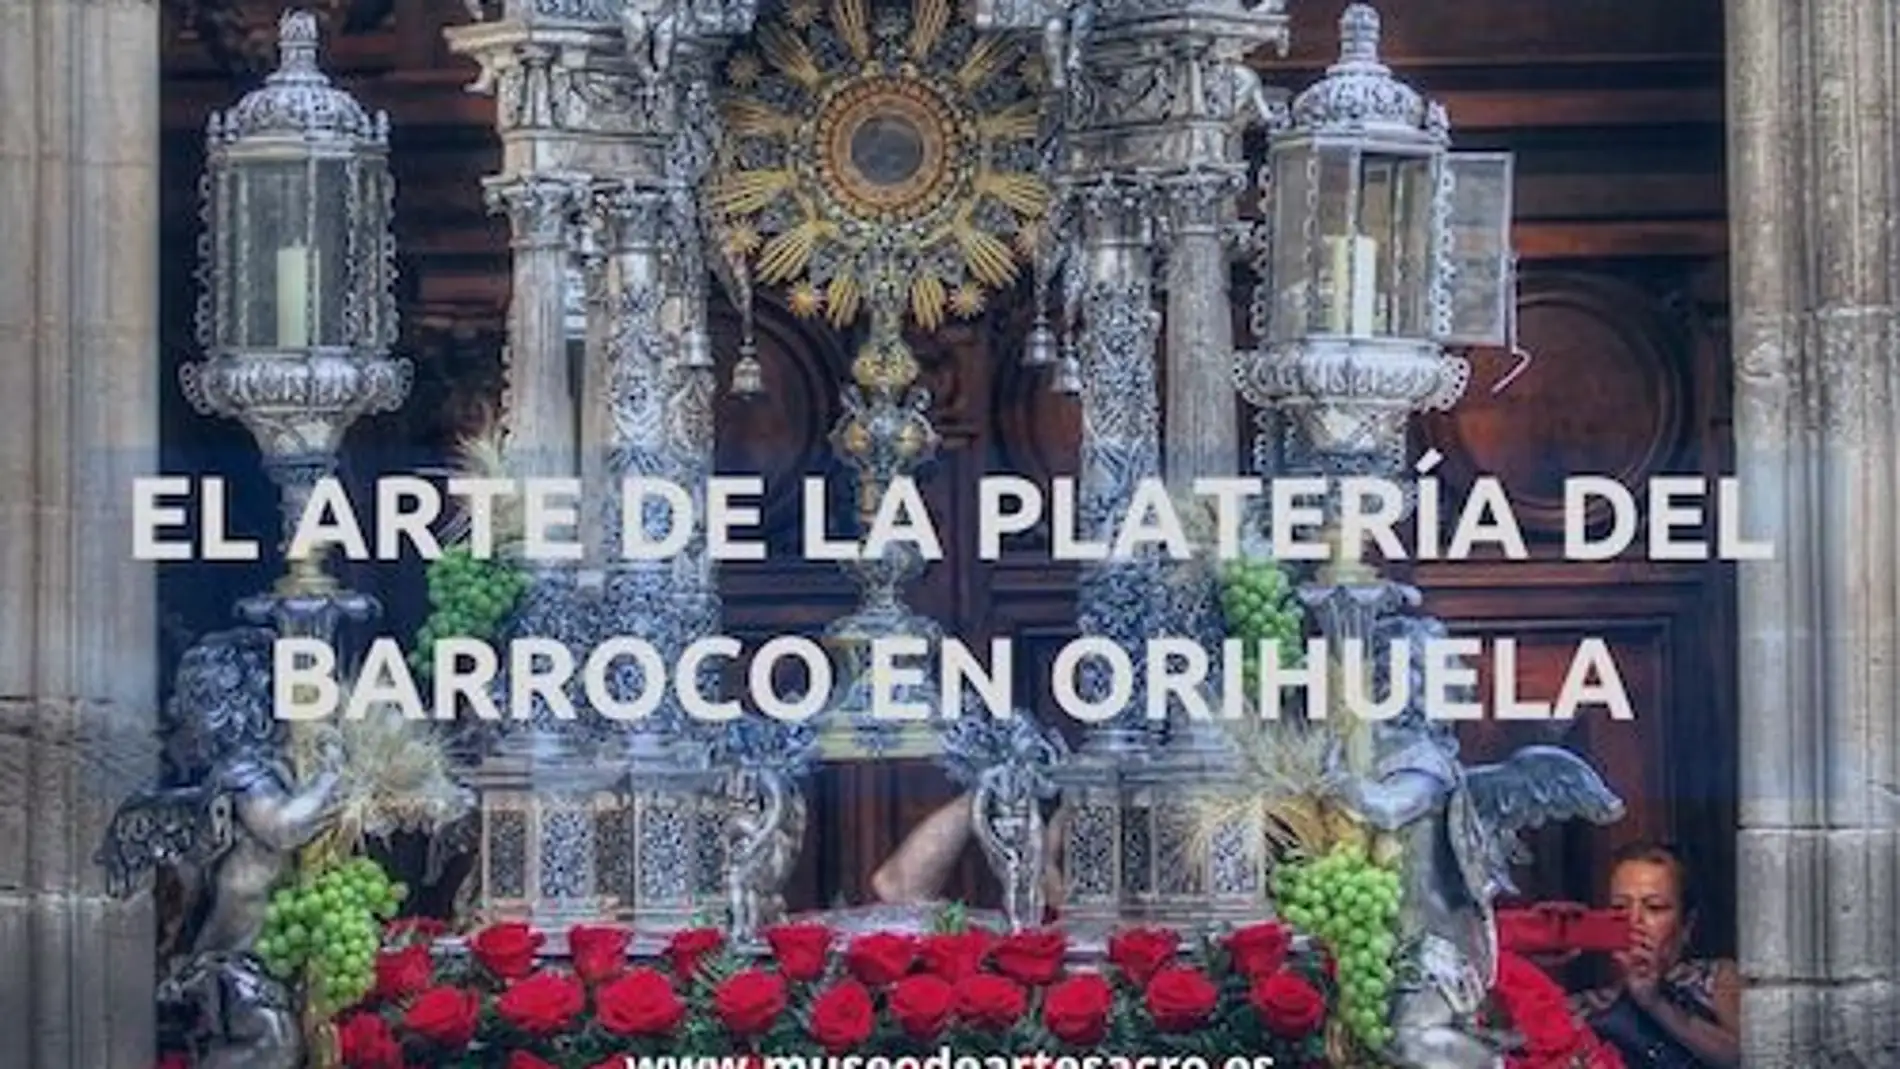 La muestra recoge piezas únicas del tesoro artístico de la Catedral de Orihuela y de las parroquias de la ciudad 